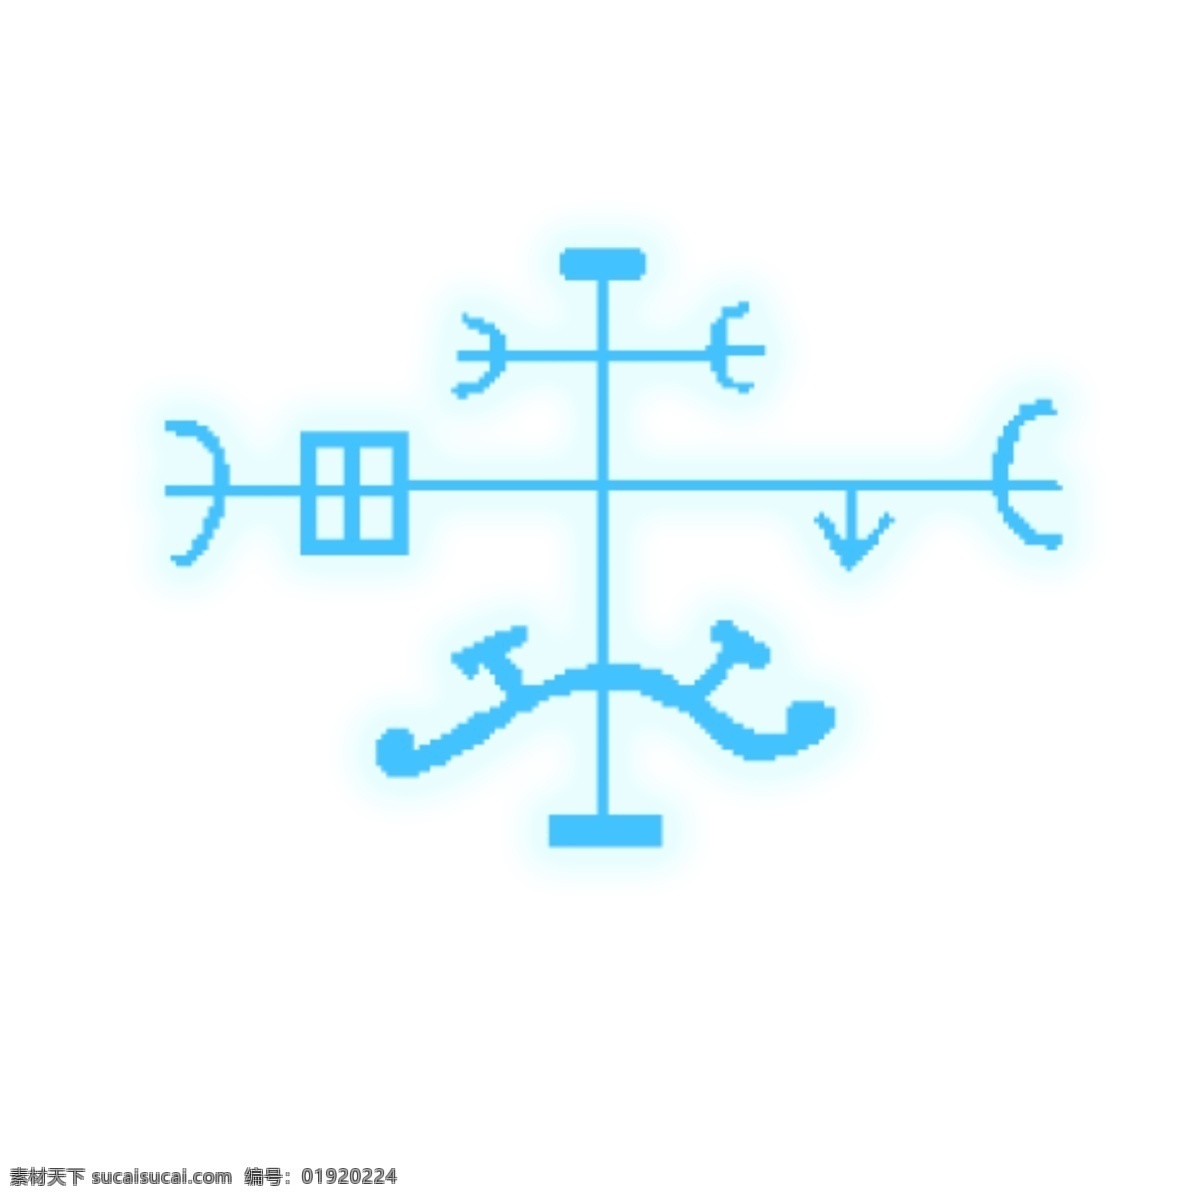 青色 魔法 符号 透明 底 魔法符号 圆环发光 光圈 光效 光环 免抠图 装饰图 光束 光点 插画 抠图 魔法文字